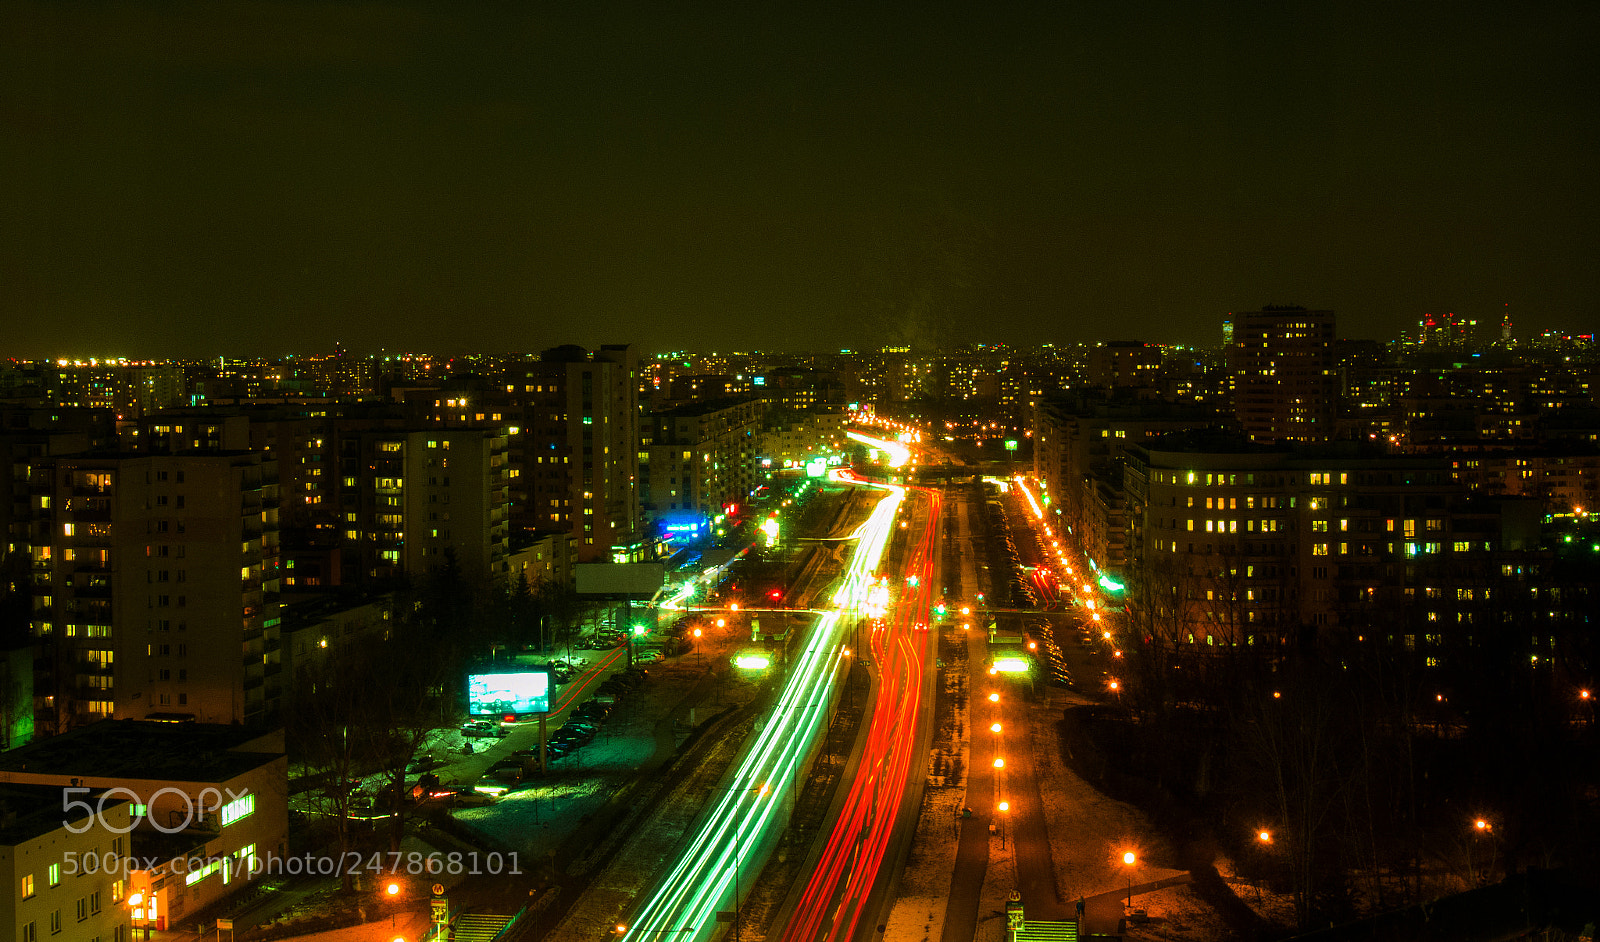 Nikon D3200 sample photo. City at night photography